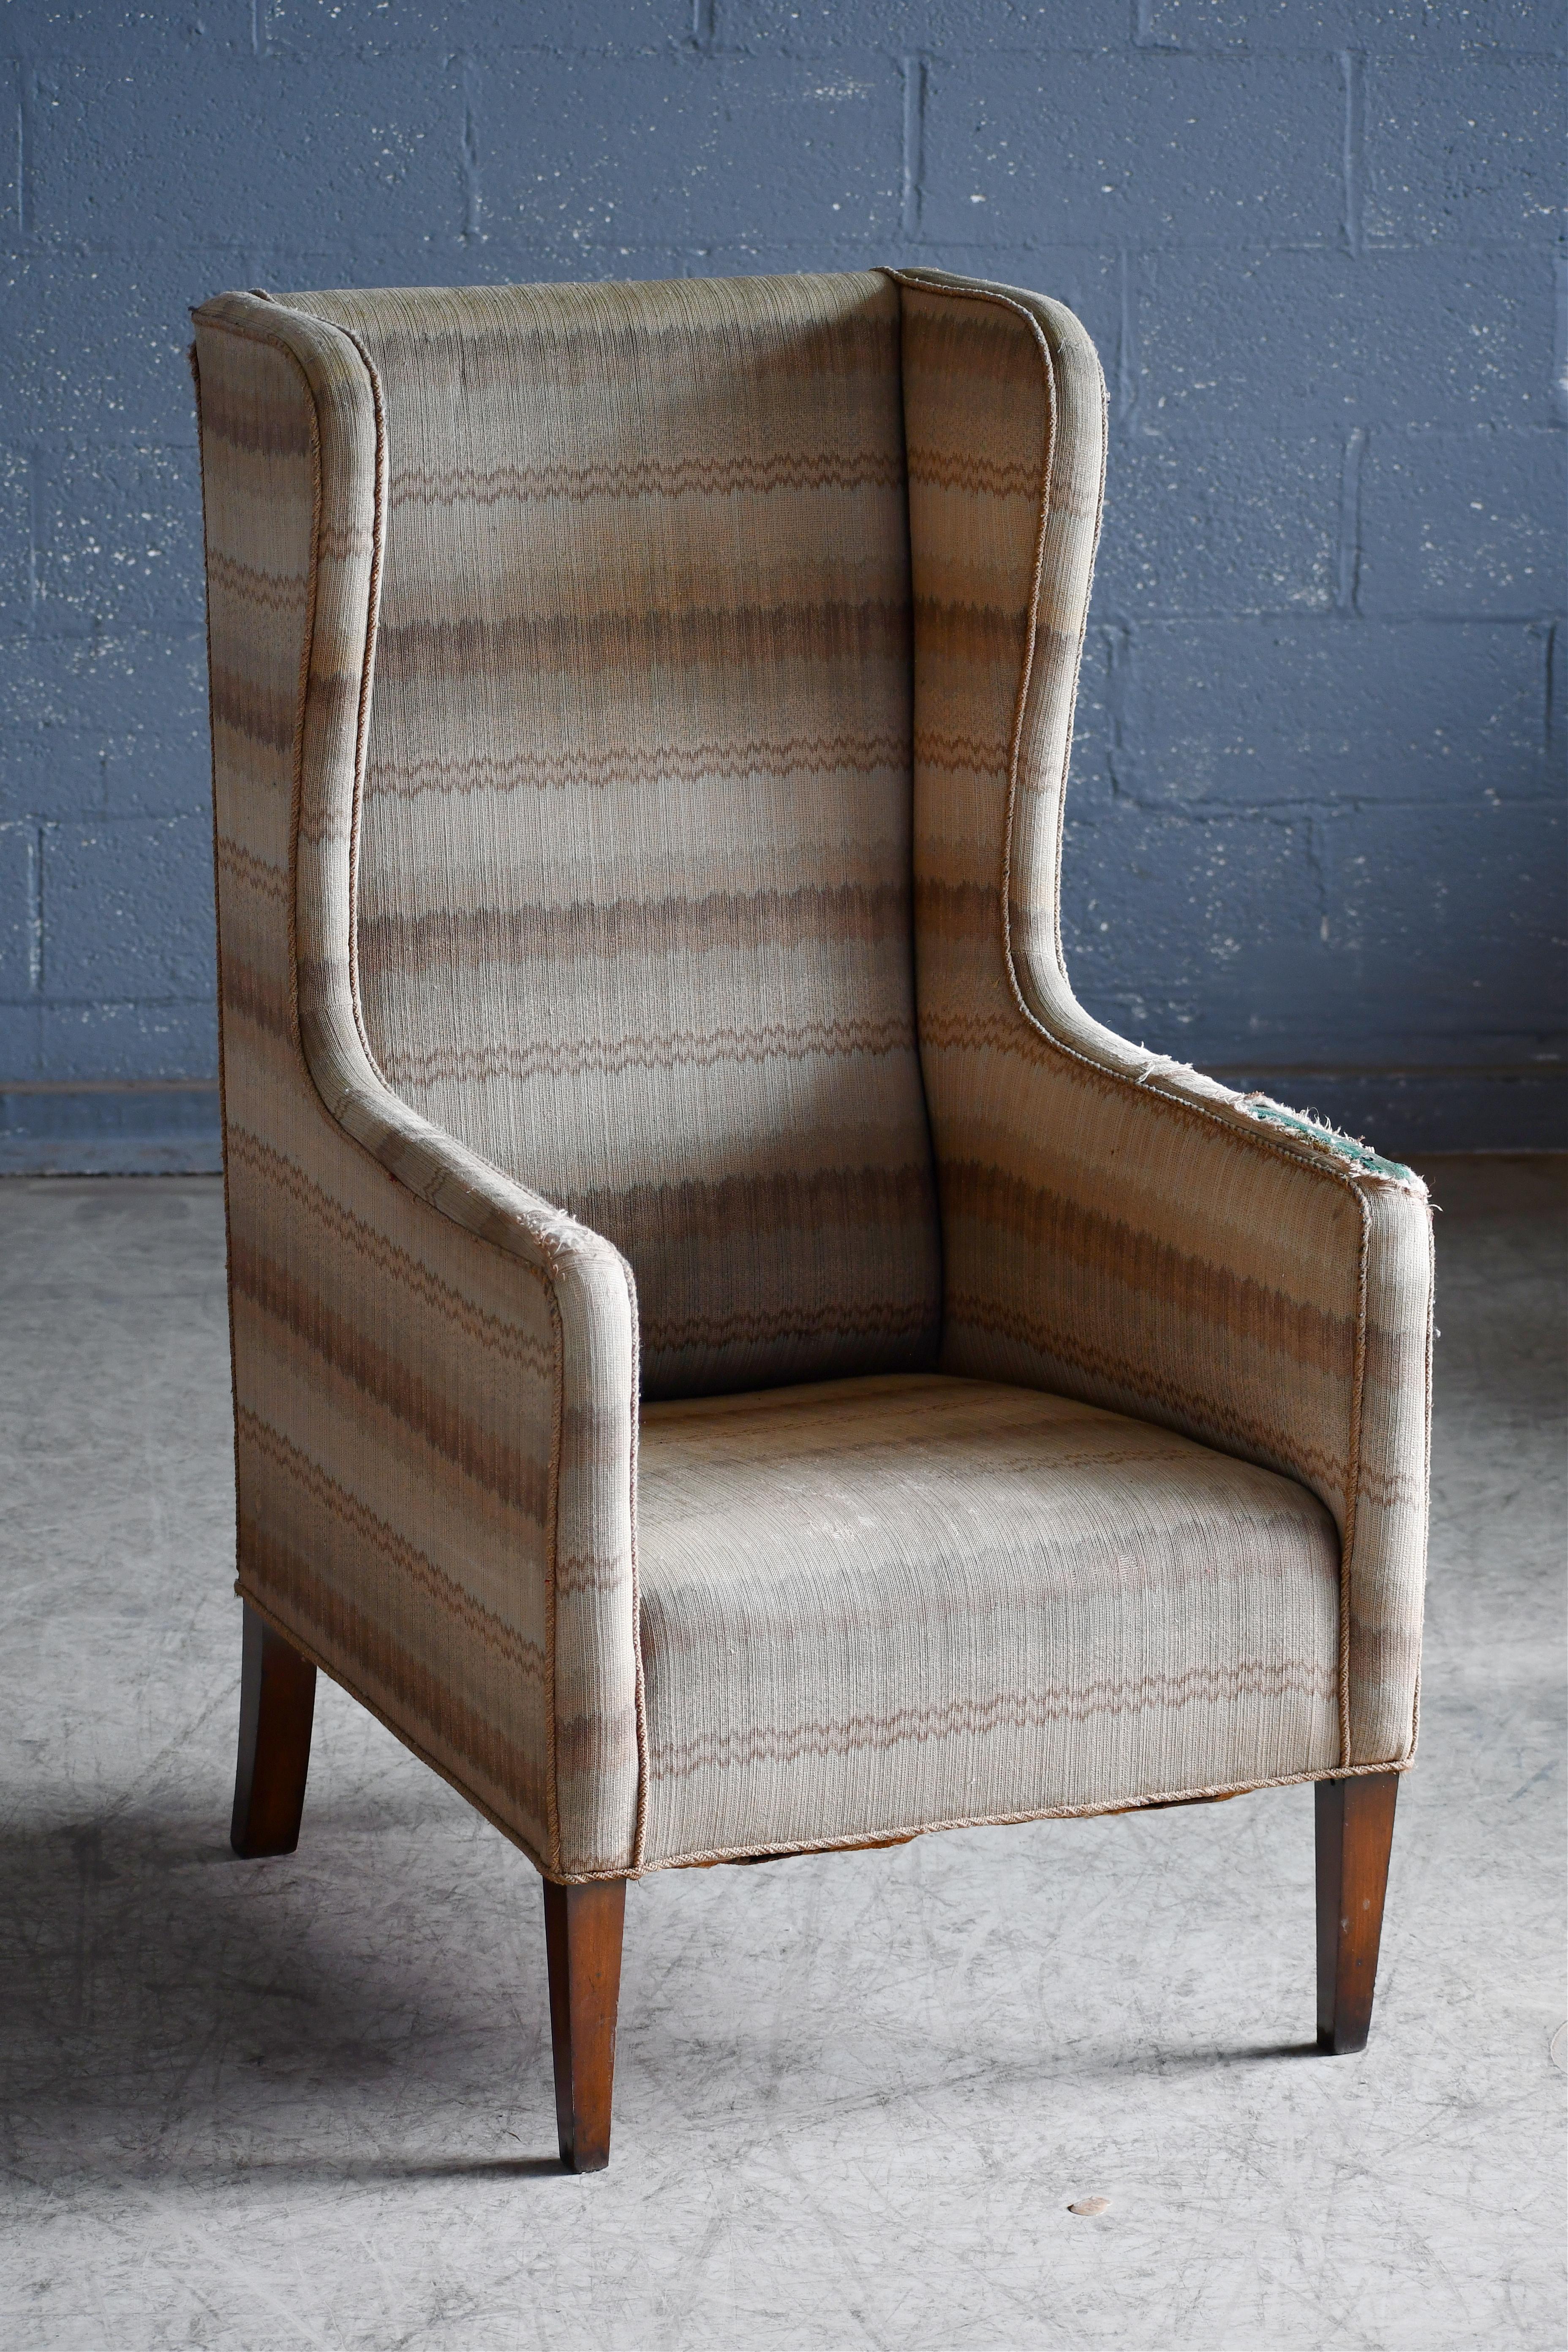 Sehr cooler Hochlehner-Sessel mit geknöpfter Rückenlehne, hergestellt in Dänemark um 1950. Schöne harmonische Proportionen mit einer schlanken und hohen Silhouette und etwas kantigen Linien im Stil von Frits Henningsen. Äußerst stilvoll und